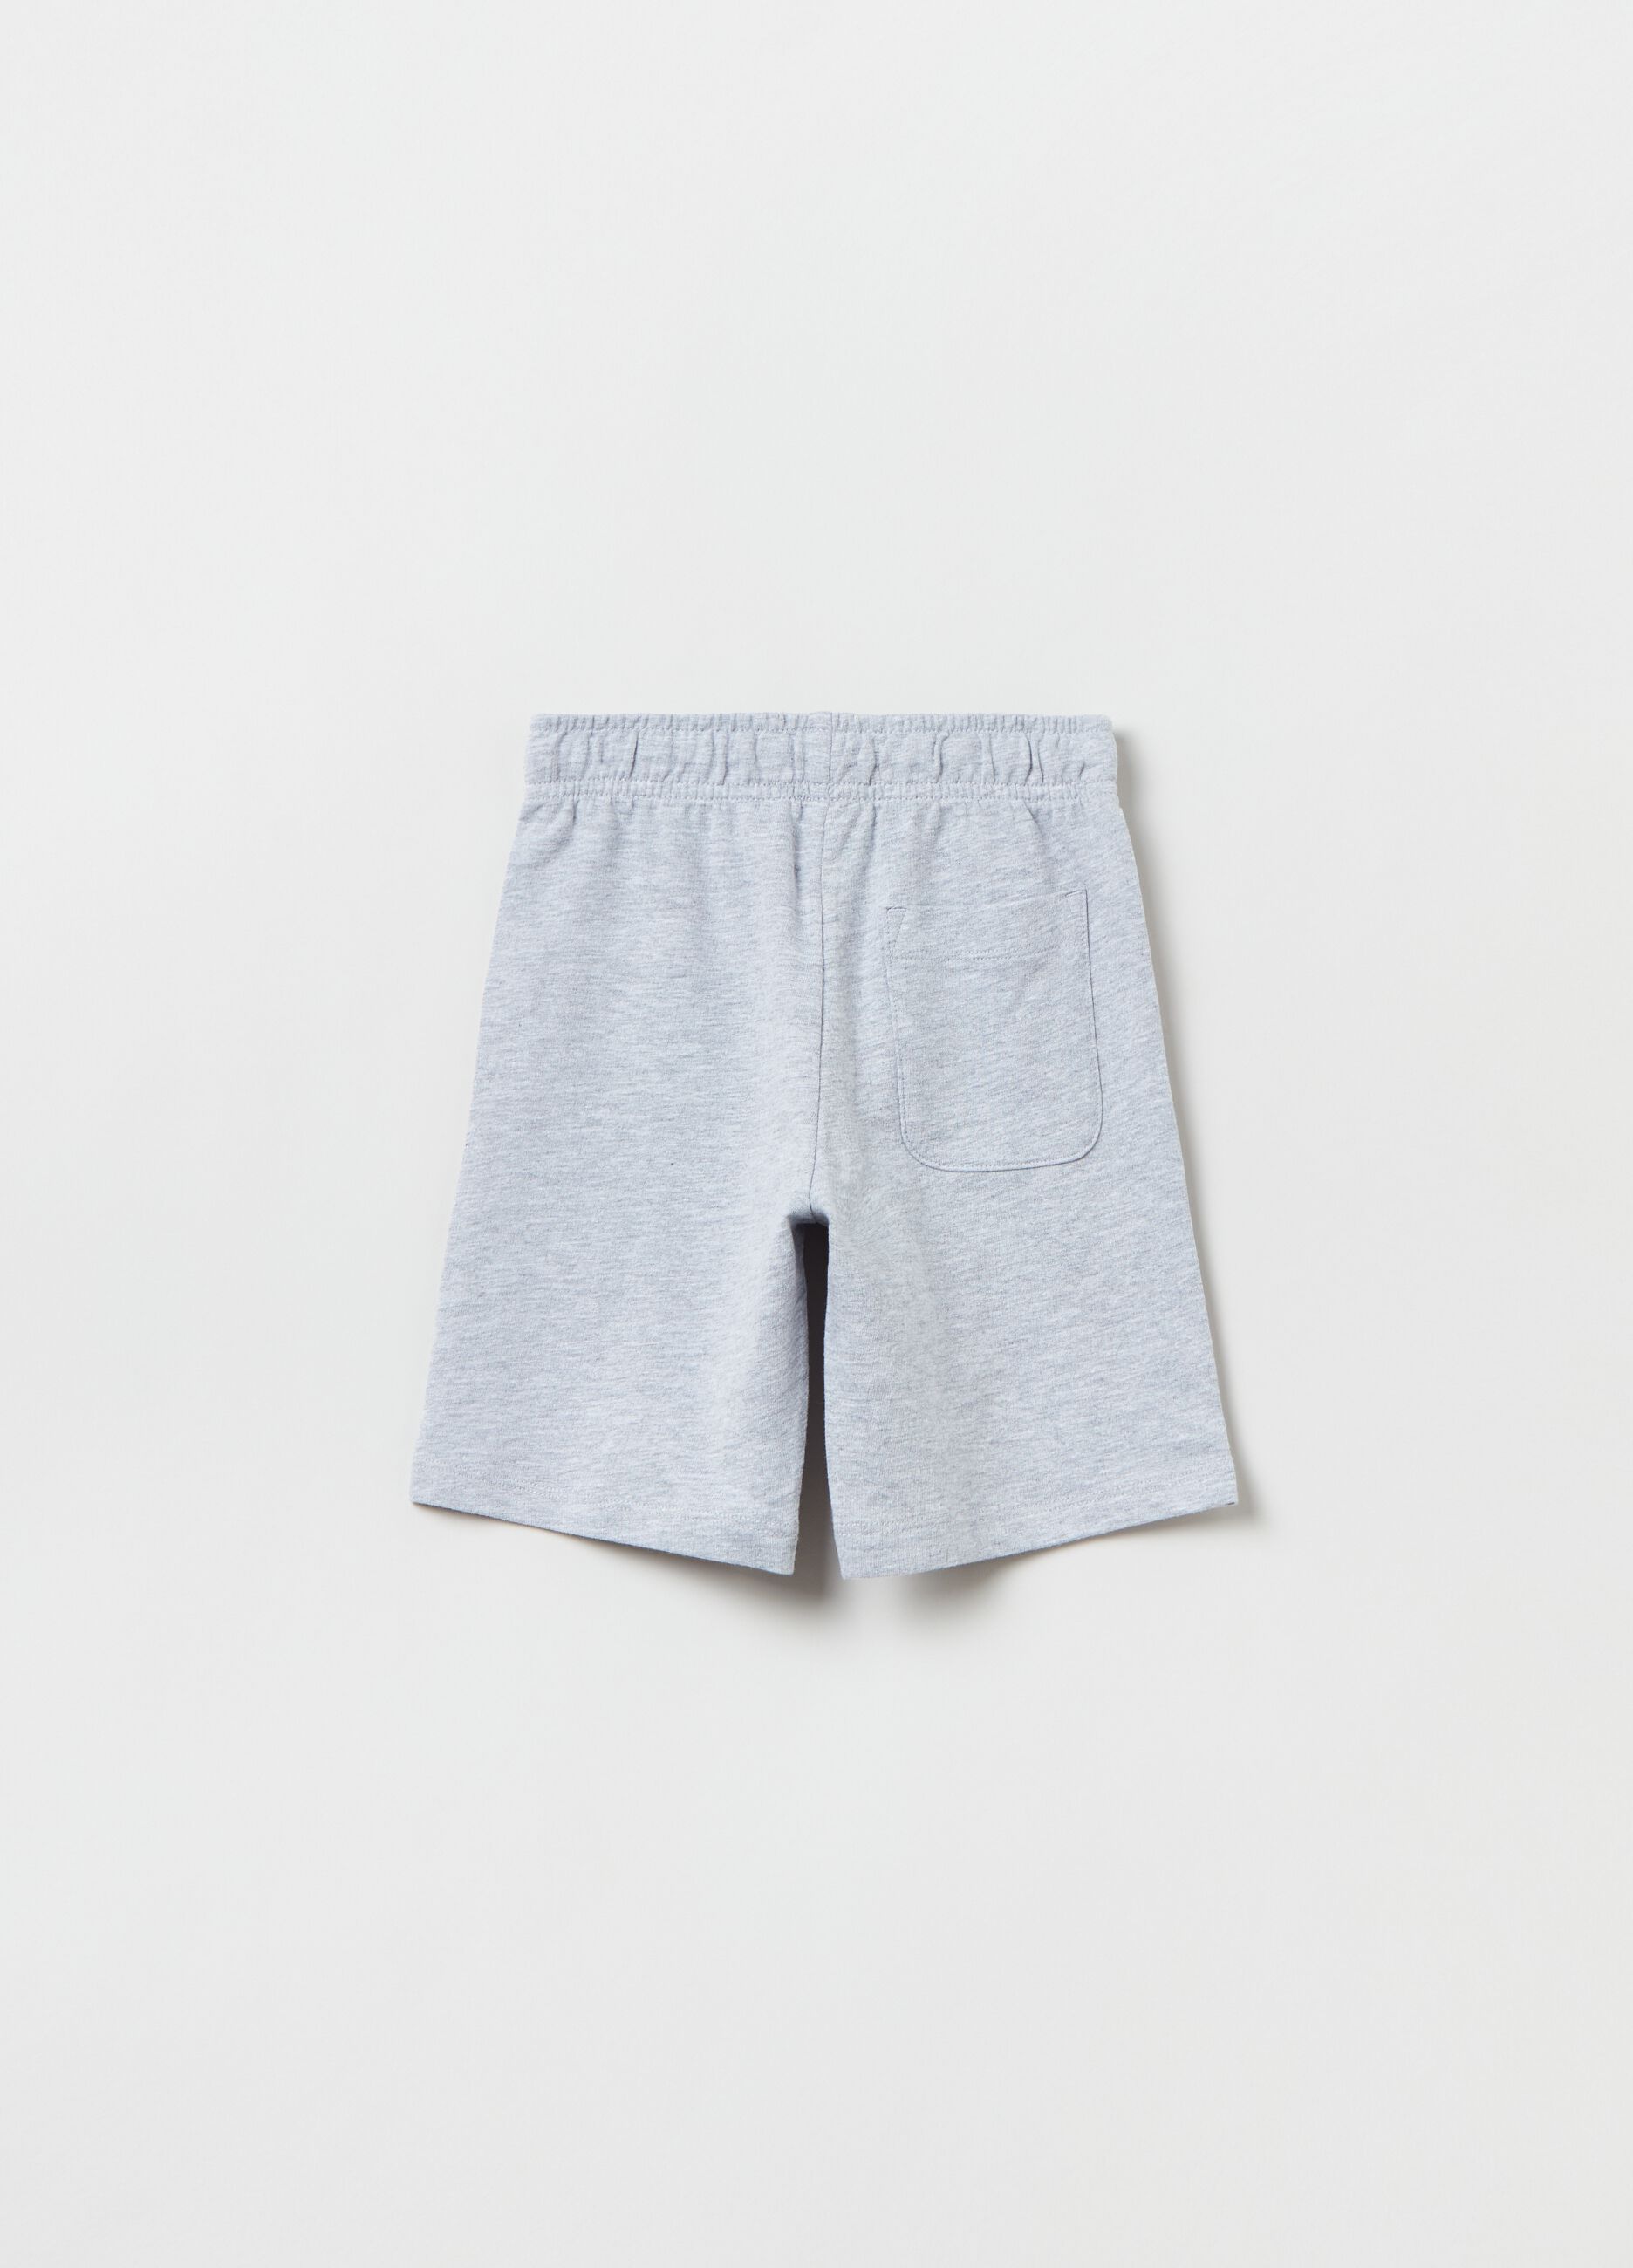 Shorts with drawstring